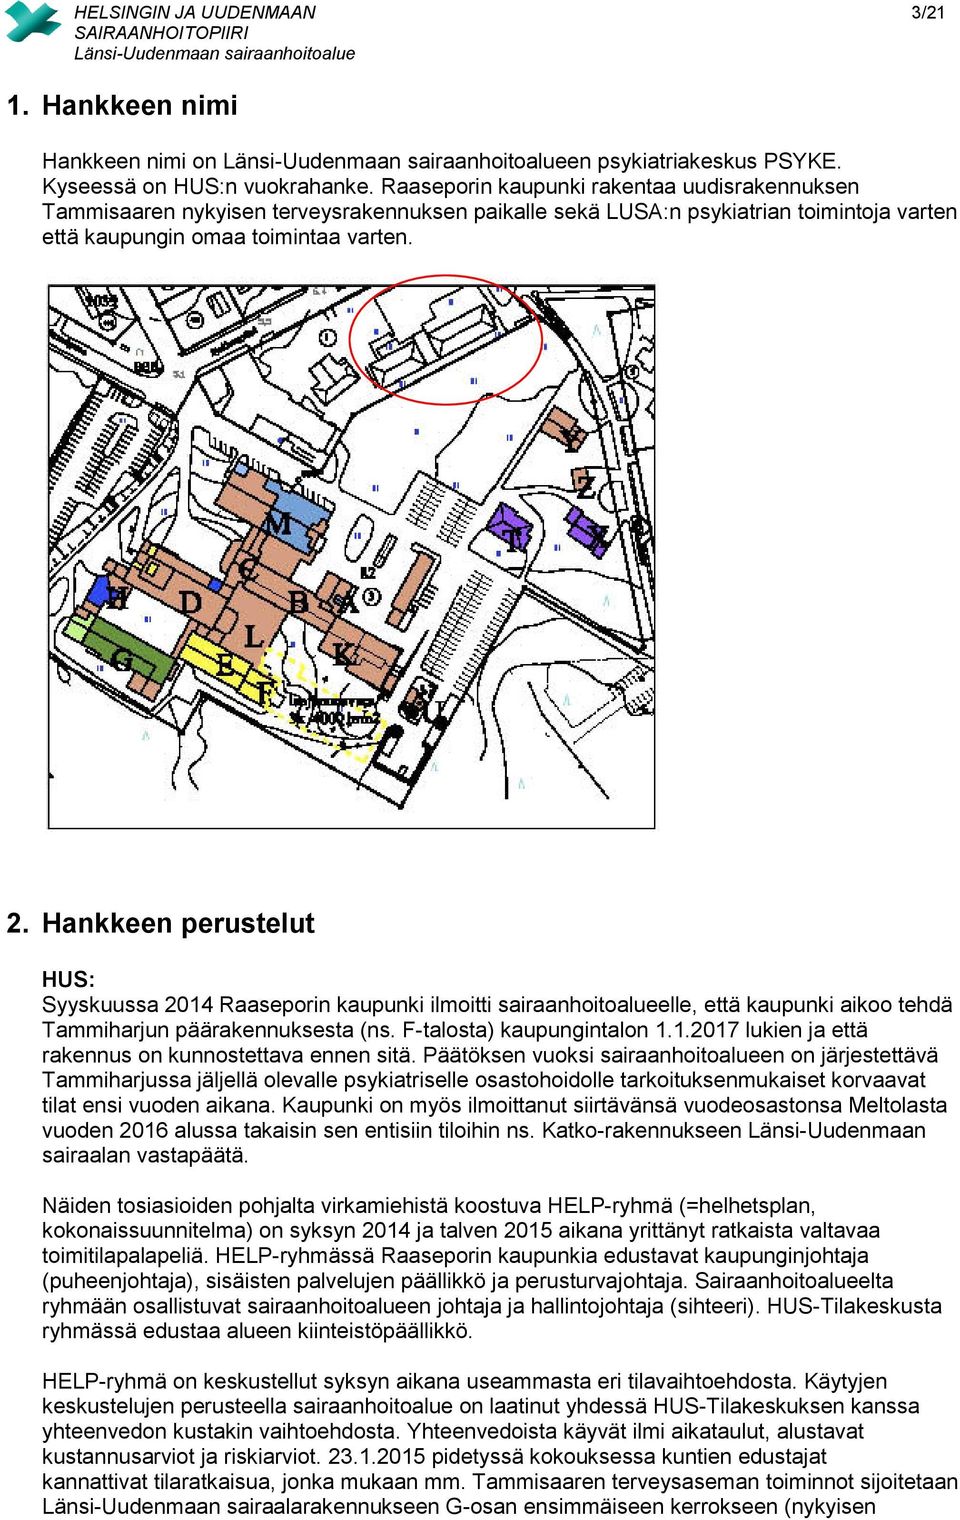 Hankkeen perustelut HUS: Syyskuussa 2014 Raaseporin kaupunki ilmoitti sairaanhoitoalueelle, että kaupunki aikoo tehdä Tammiharjun päärakennuksesta (ns. F-talosta) kaupungintalon 1.1.2017 lukien ja että rakennus on kunnostettava ennen sitä.